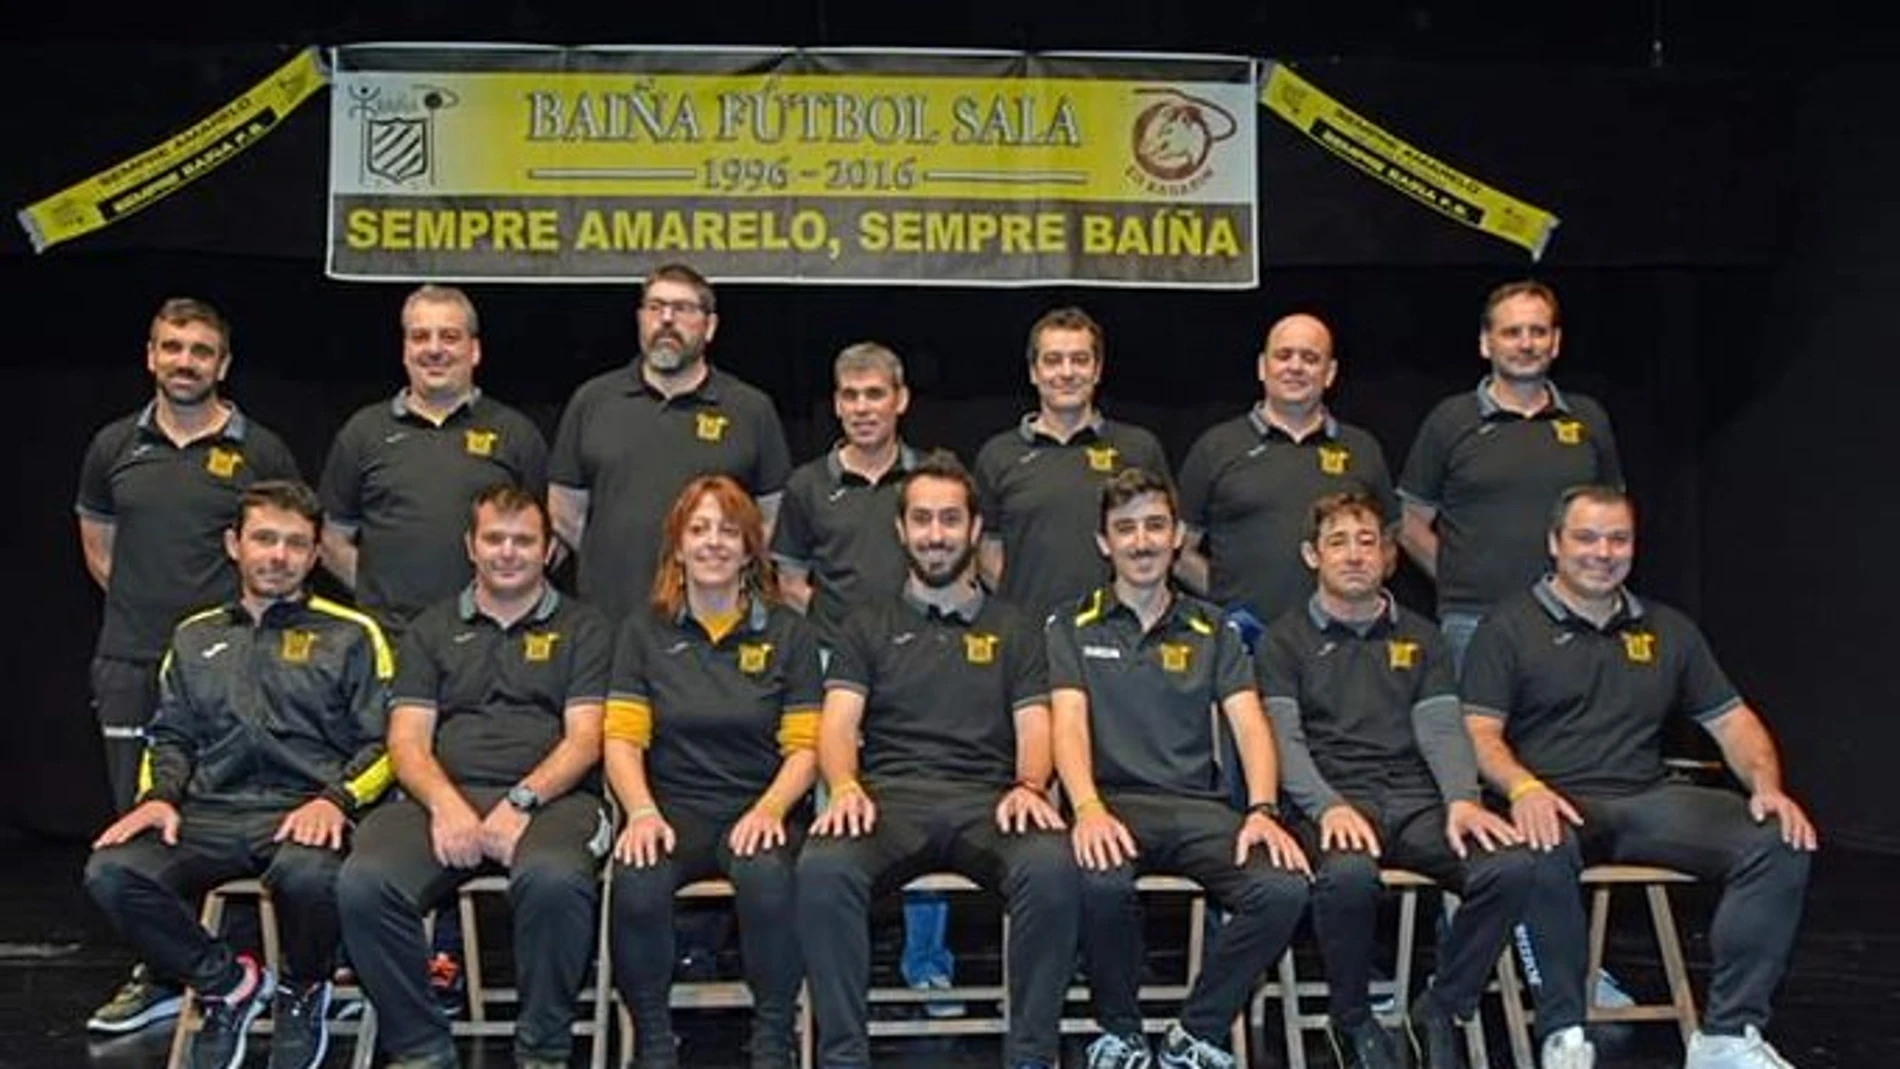 El equipo de fútbol sala gallego Baíña